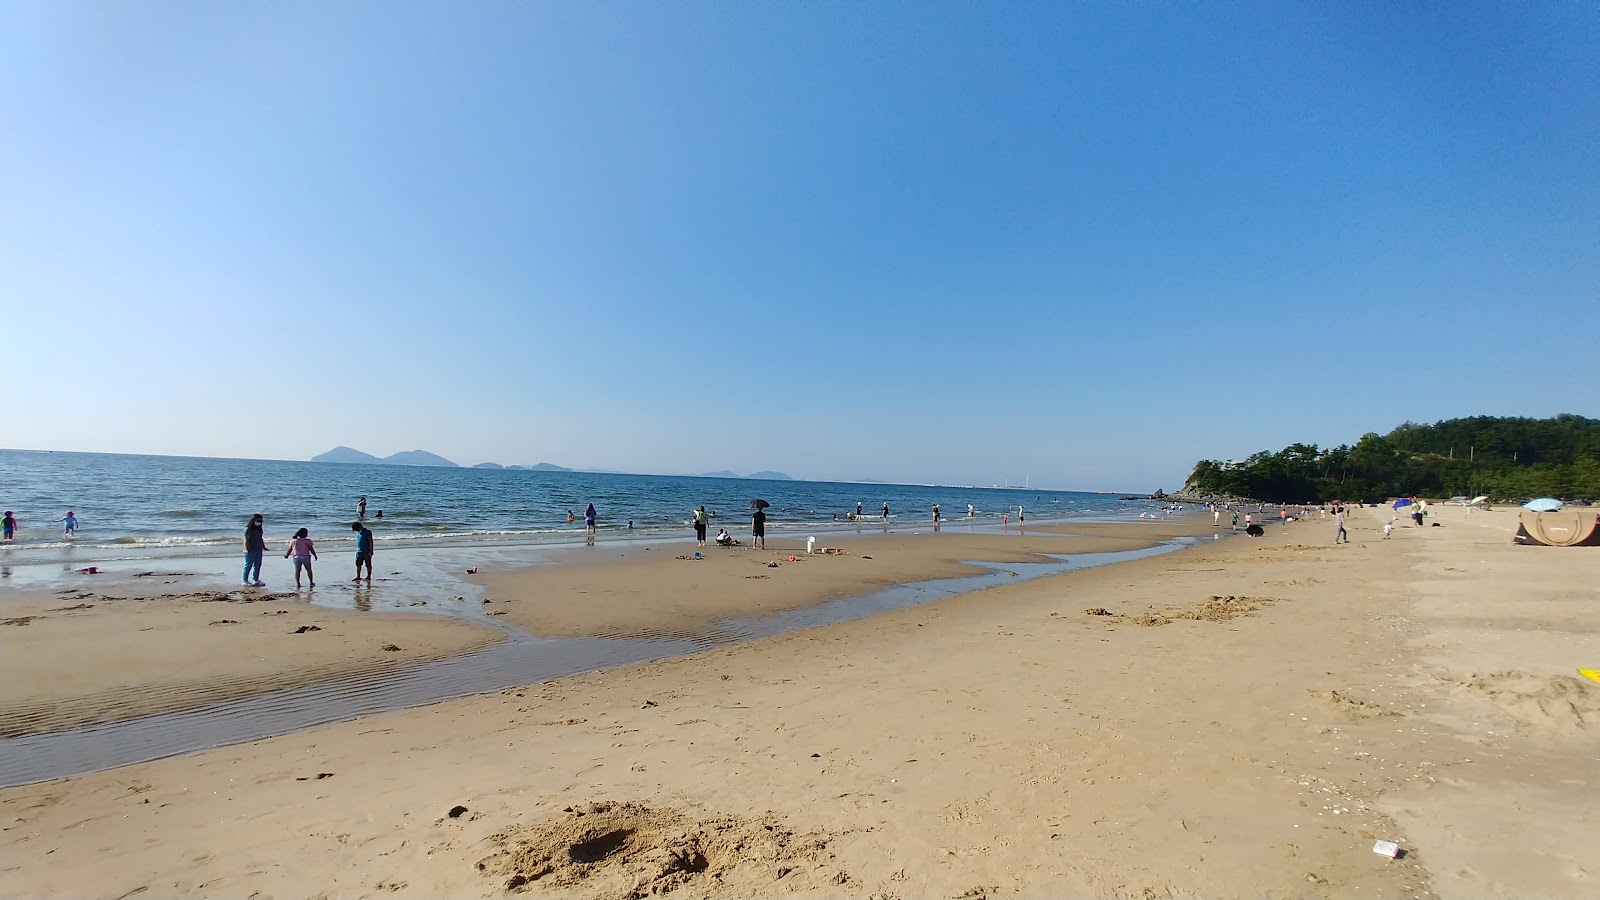 Fotografie cu Byeonsan Beach cu o suprafață de nisip strălucitor